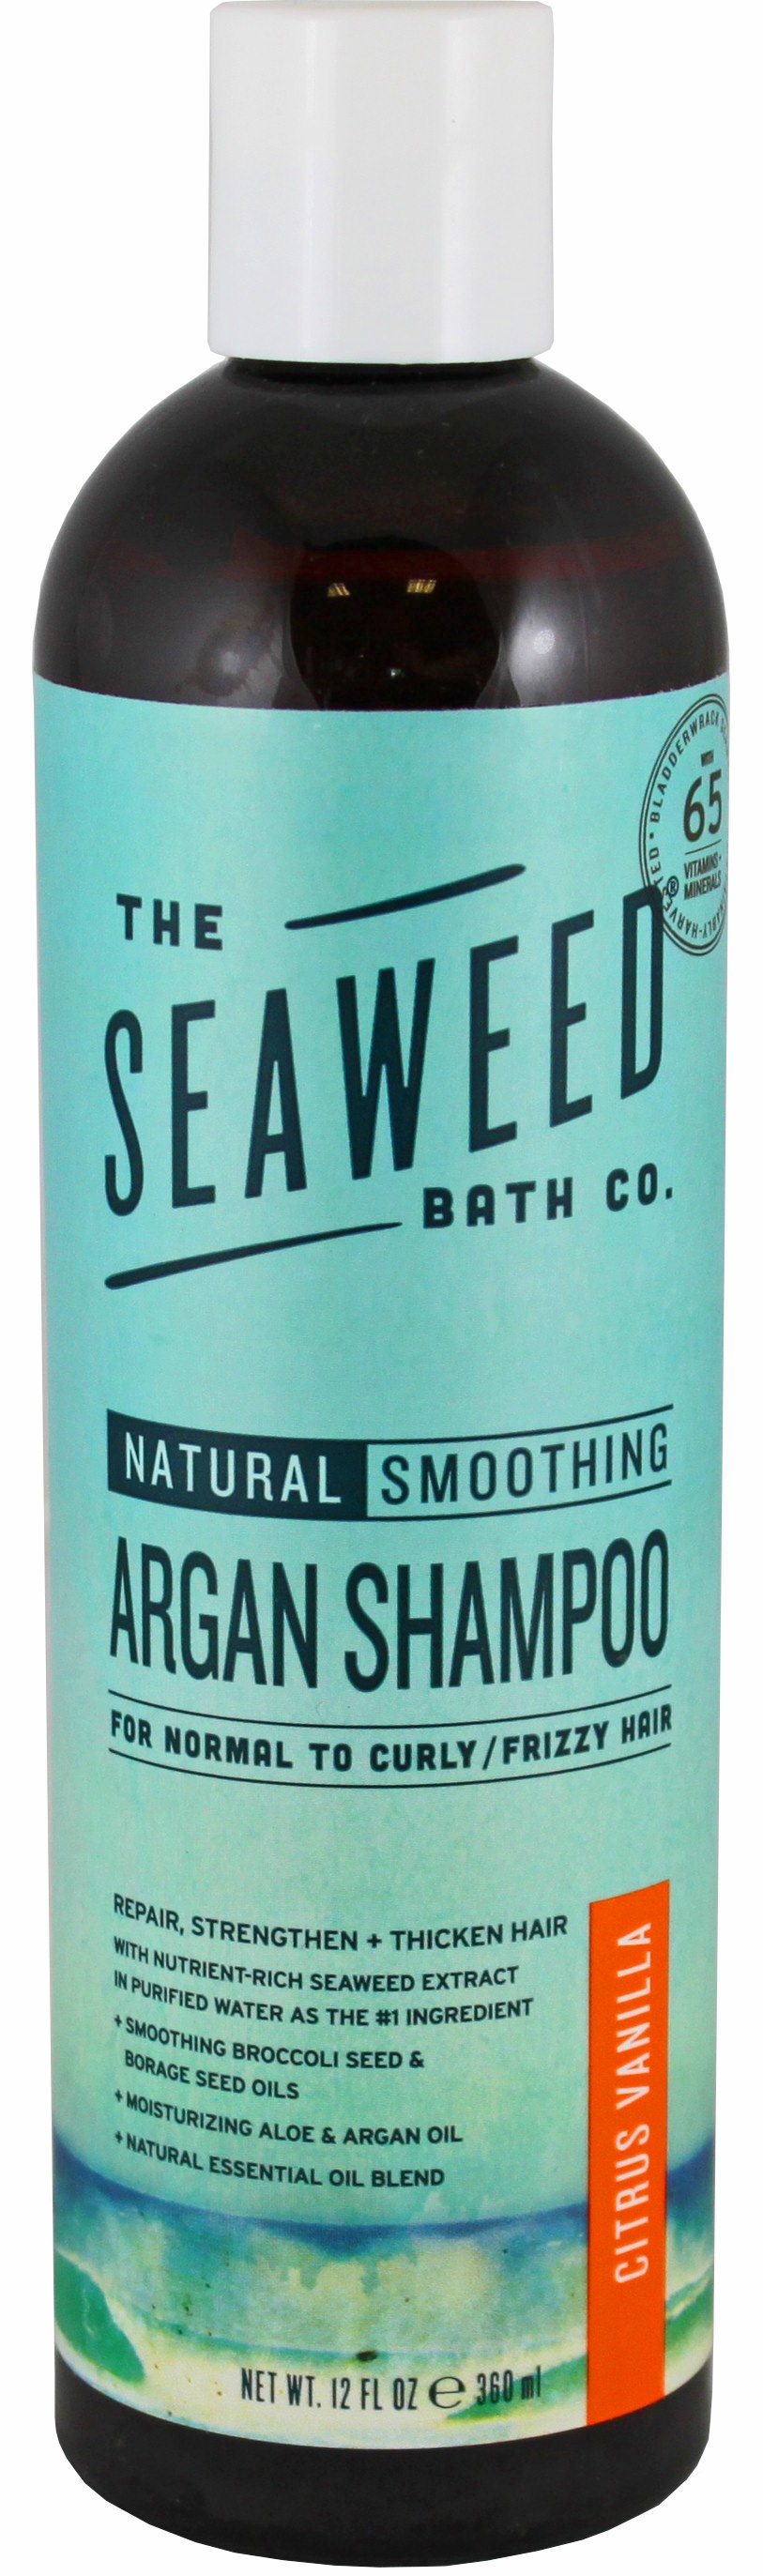 The Seaweed Bath Co Shampoo Citrus - Shop Hair Care at H-E-B